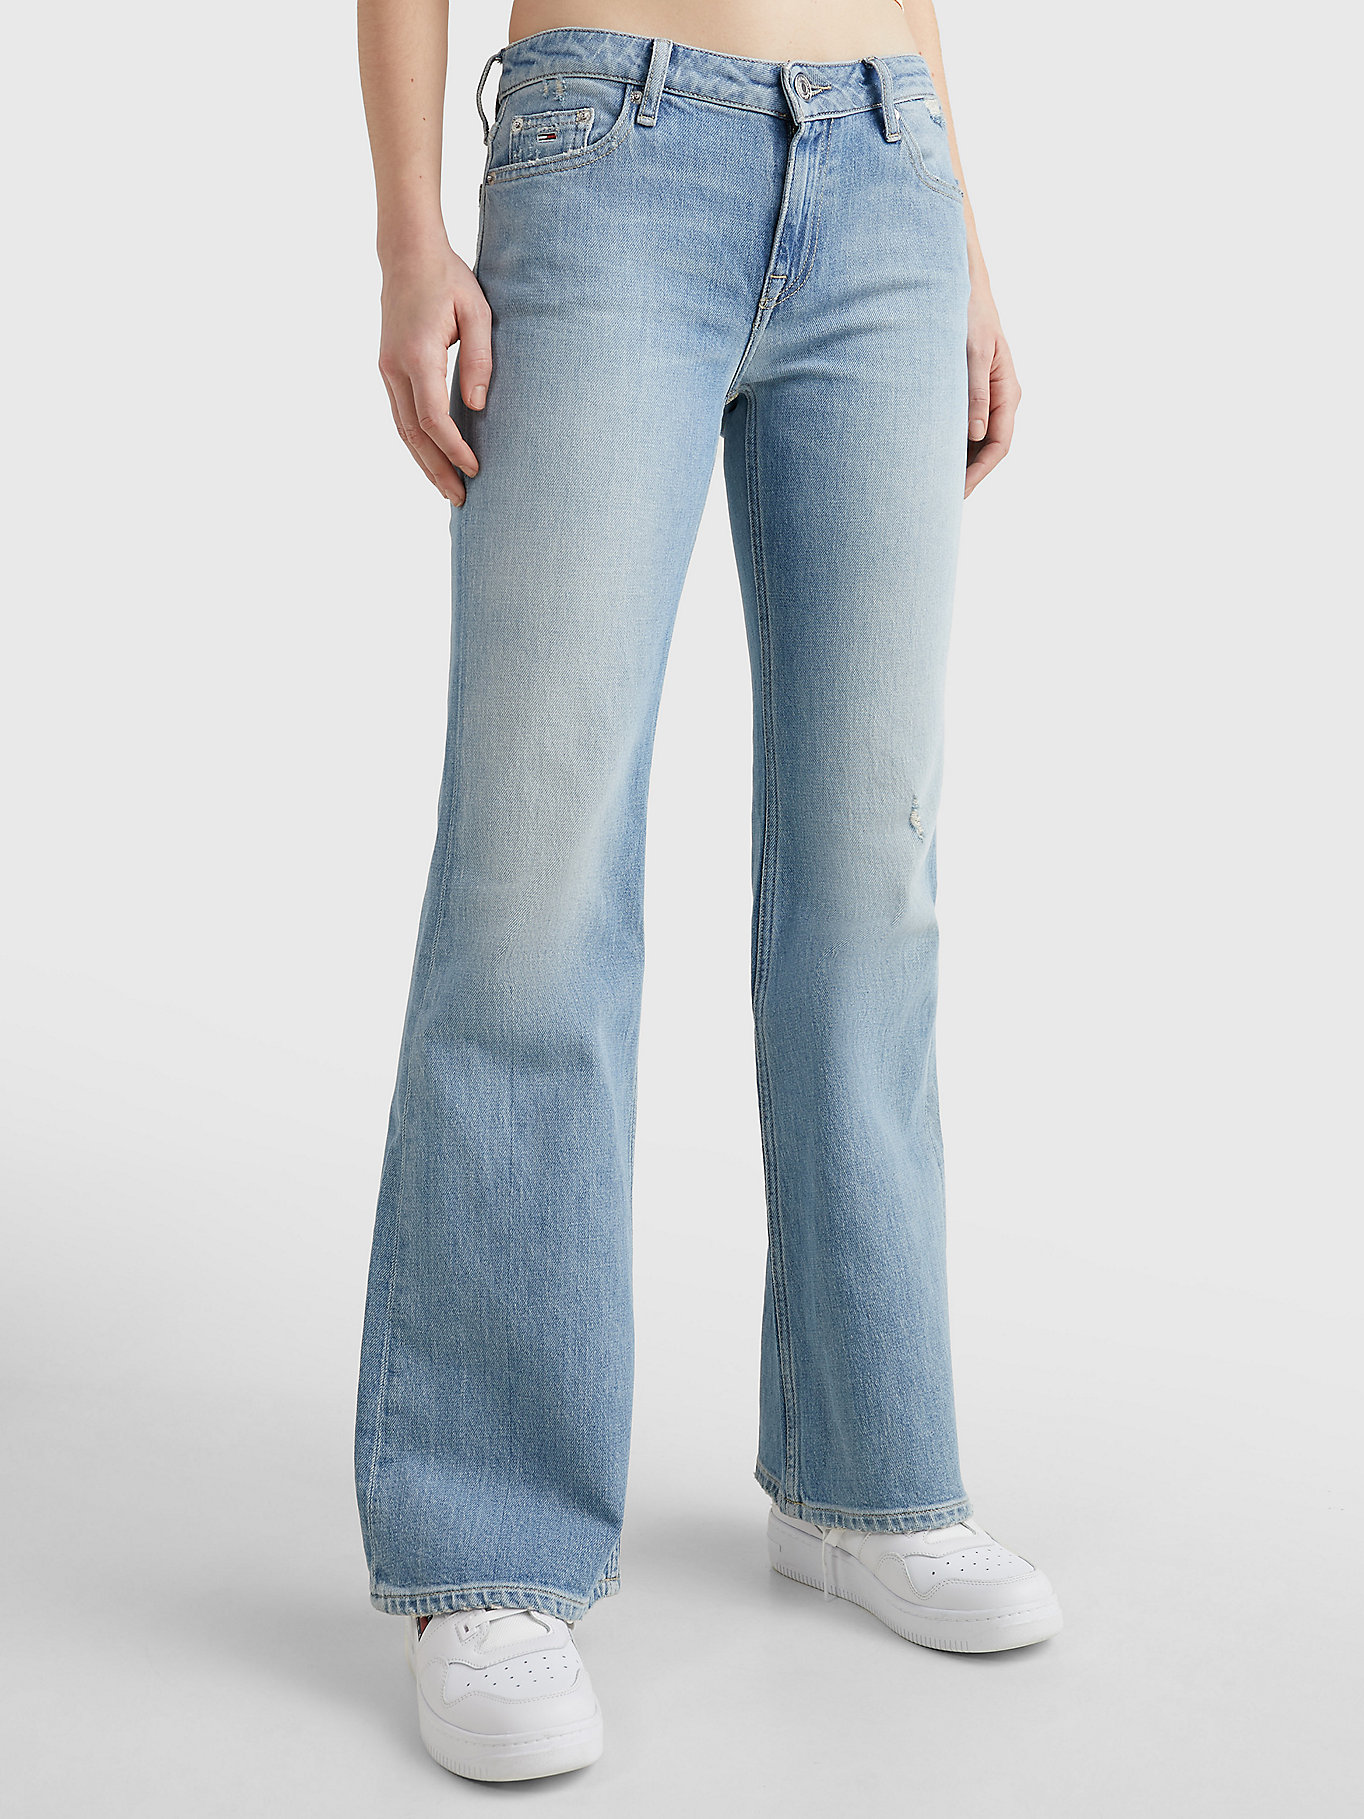 besteden deuropening Kent Sophie low rise flared jeans | DENIM | Tommy Hilfiger